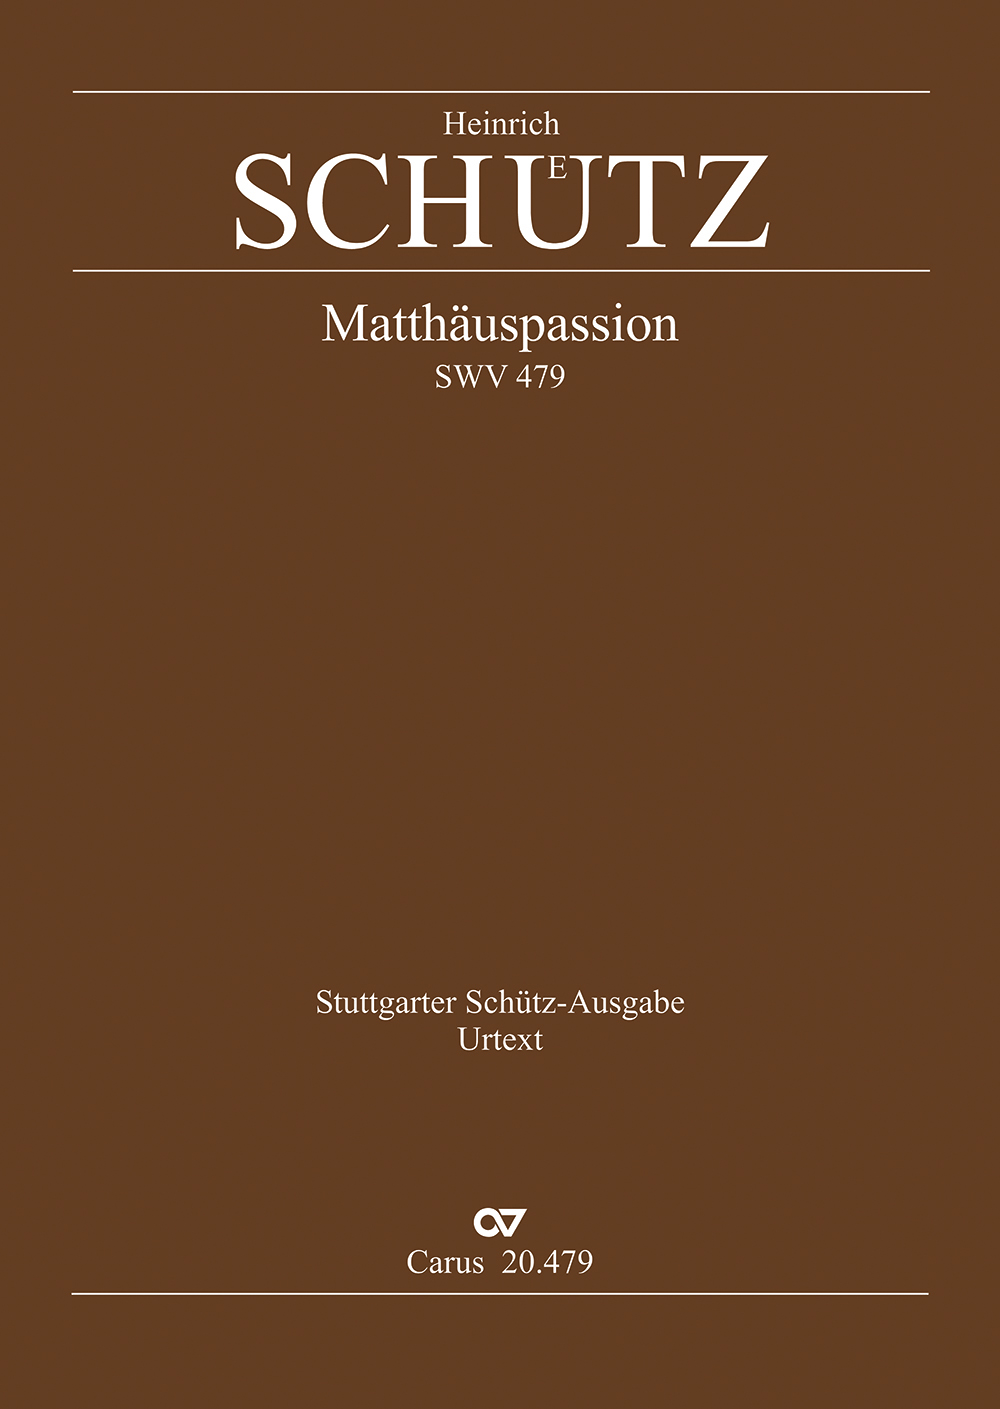 Matthäuspassion (SCHUTZ HEINRICH)